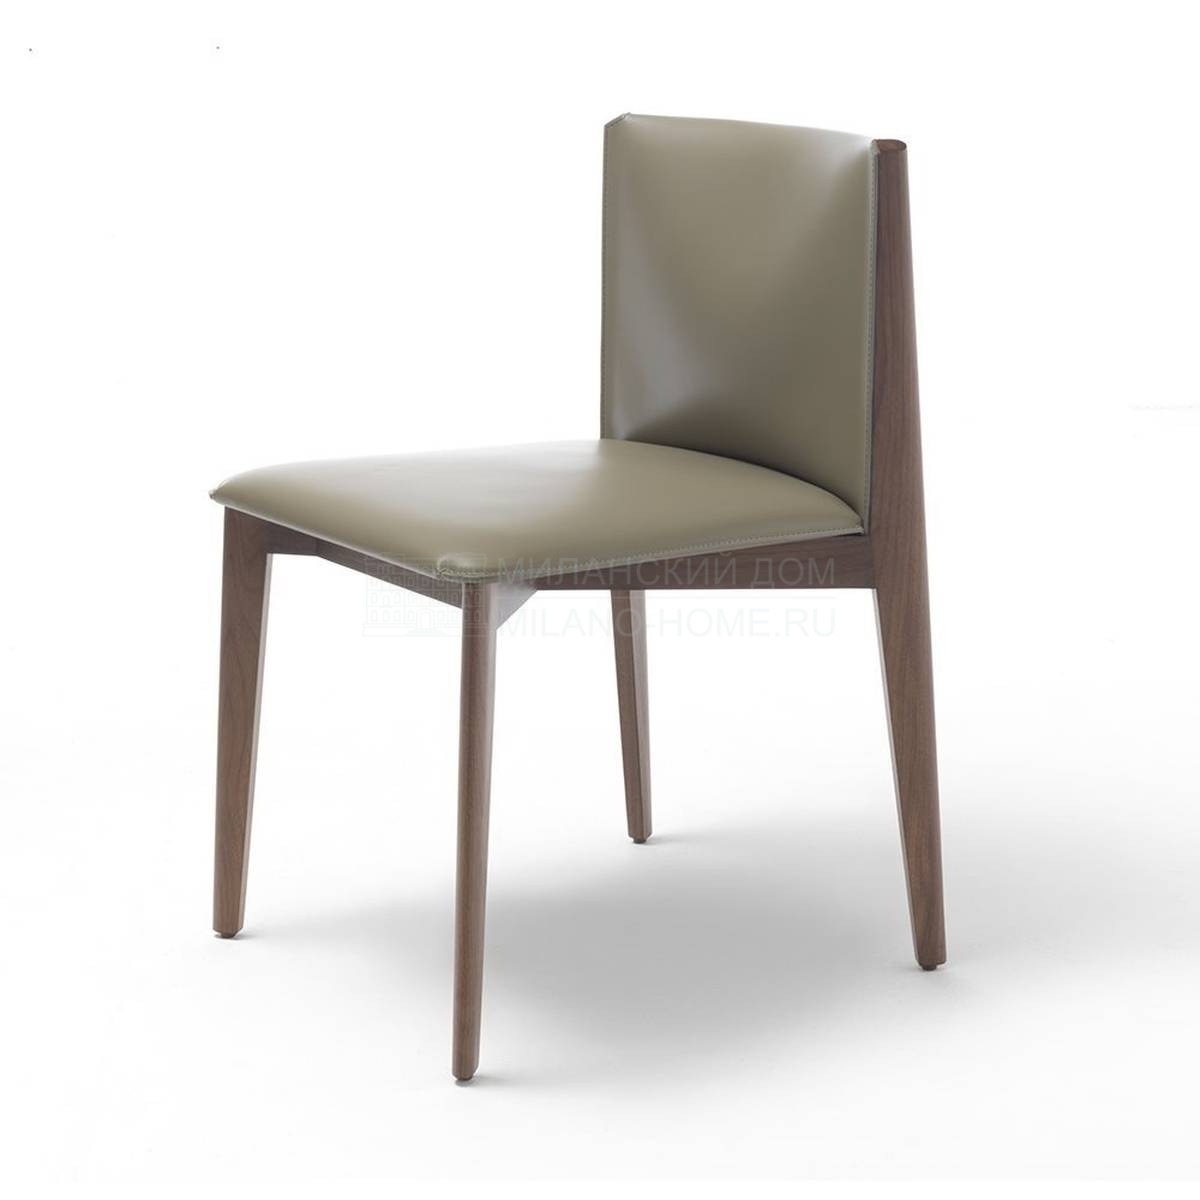 Кожаный стул Ionis chair из Италии фабрики PORADA